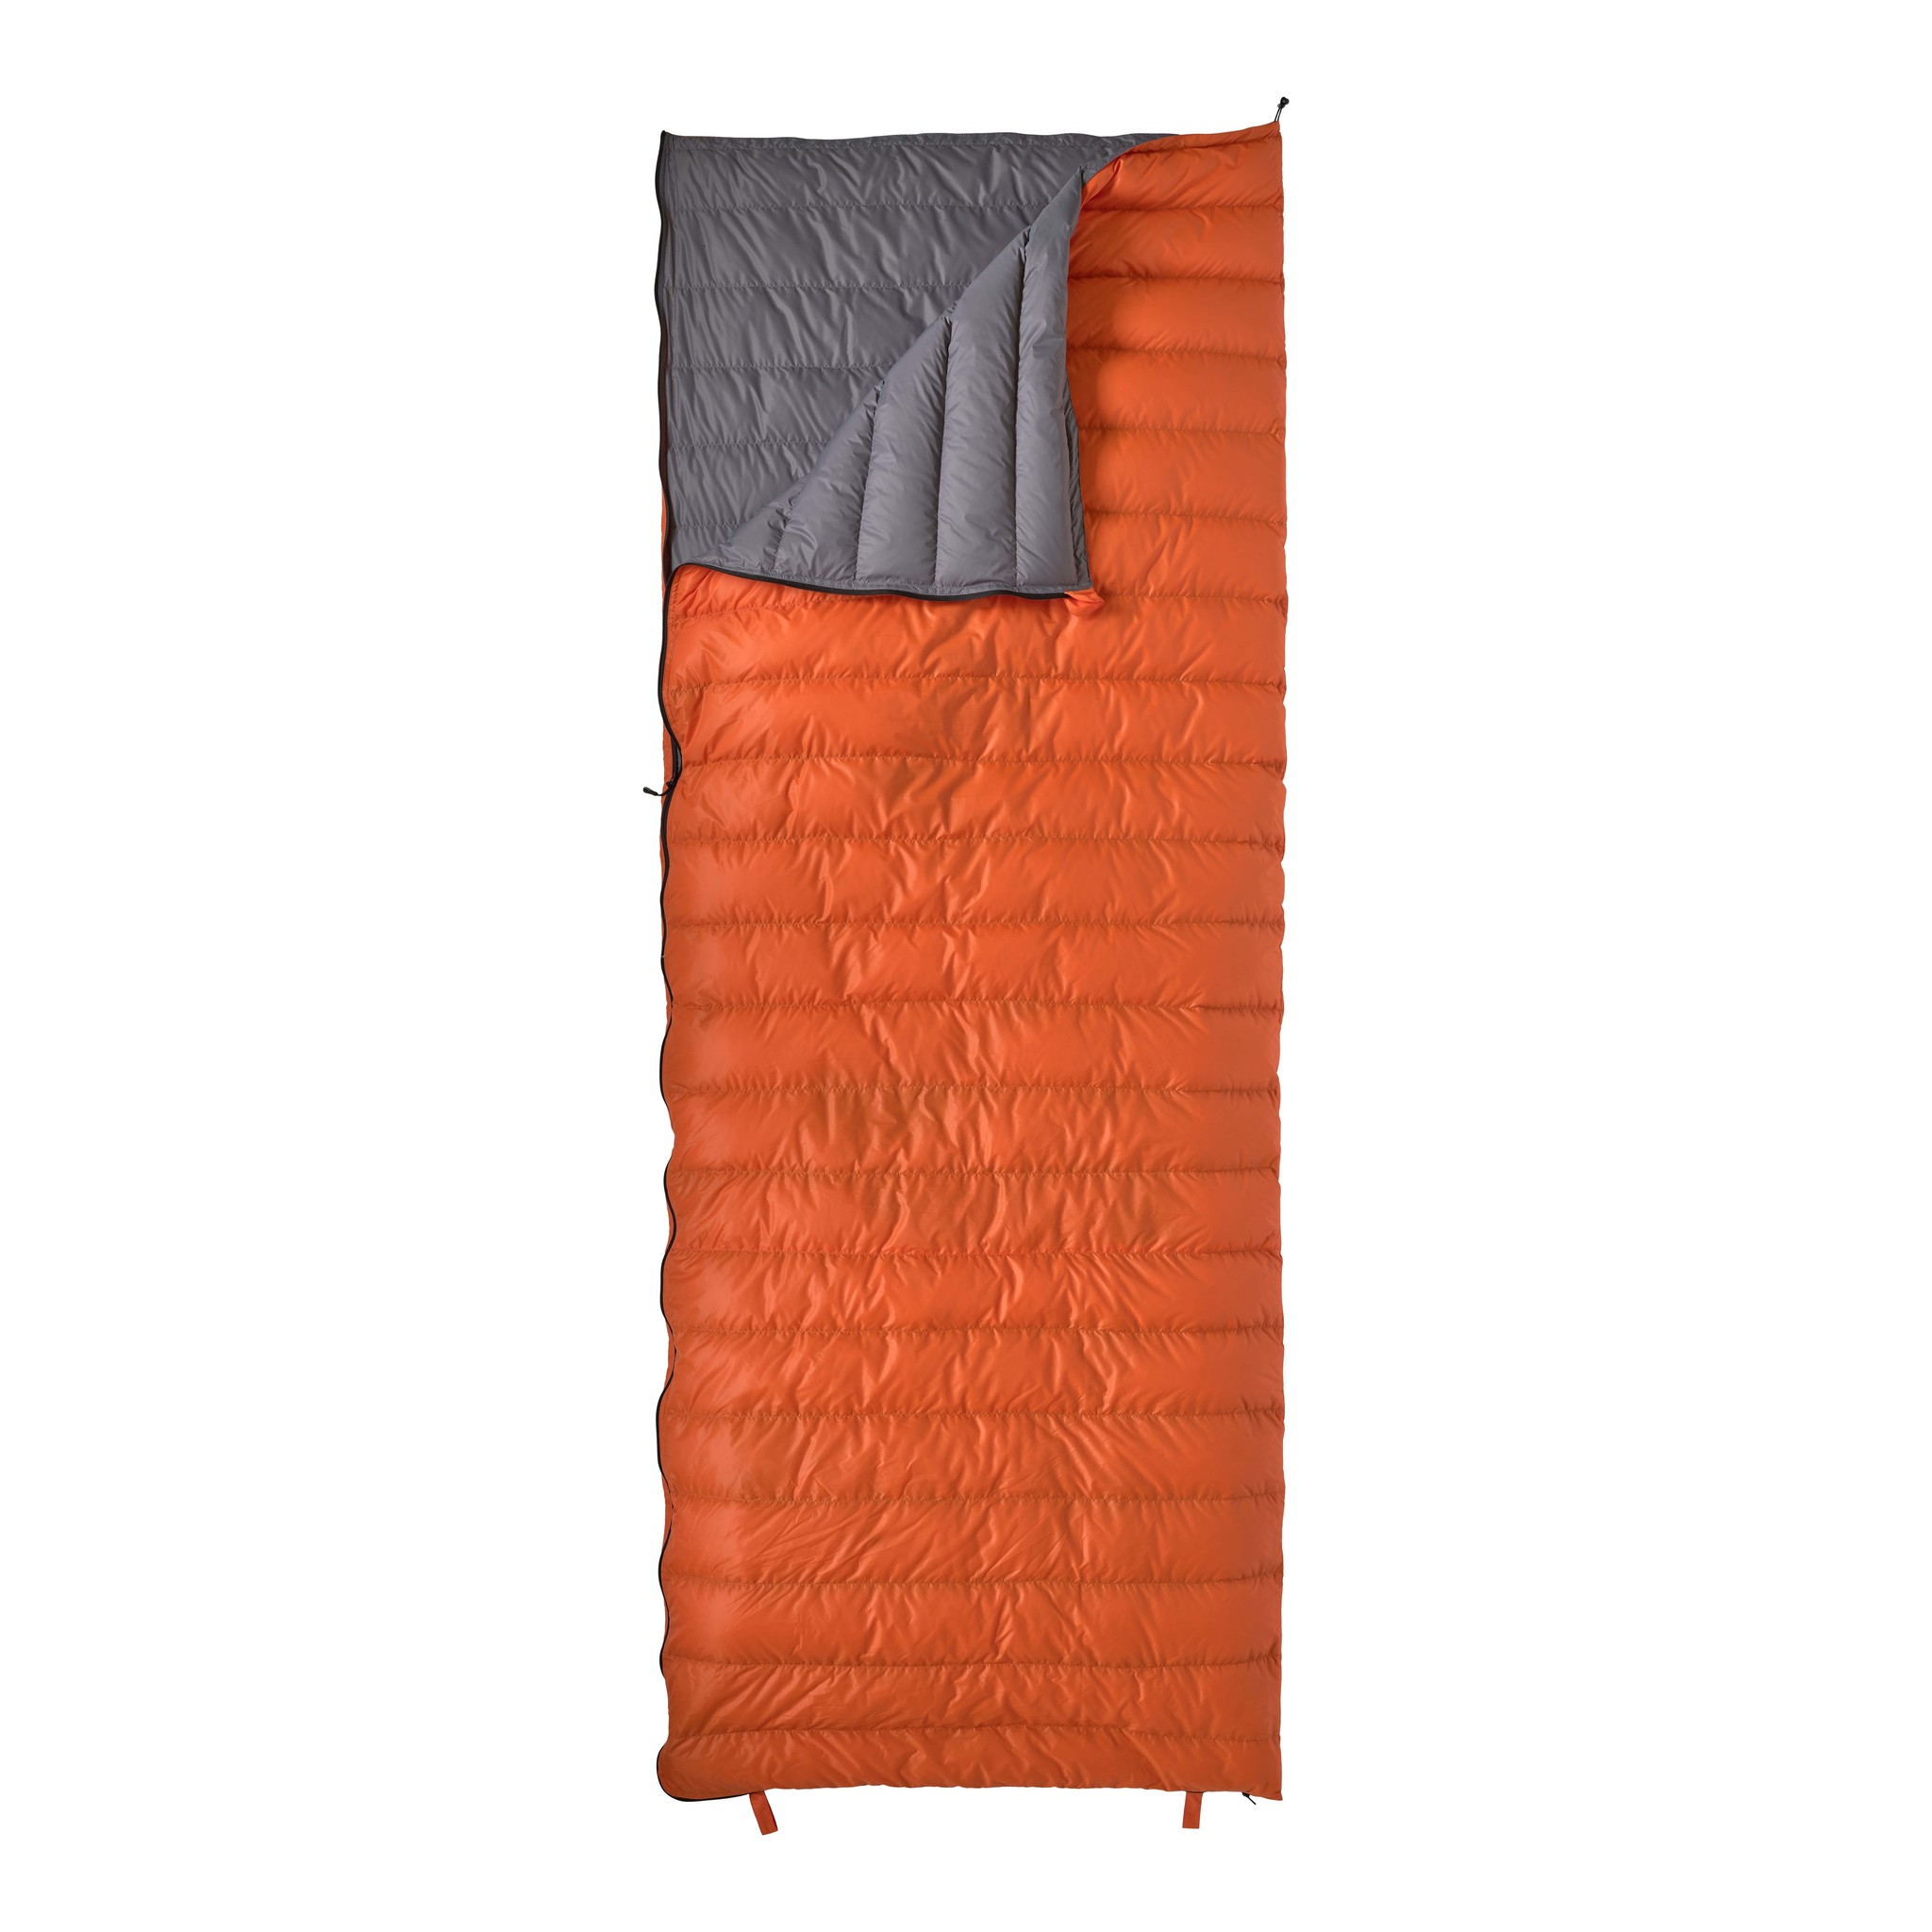 Geaccepteerd Kanon zacht LOWLAND OUTDOOR® Super compact blanket - 590g - 210x80 cm +8°C - Sleeping  Bags